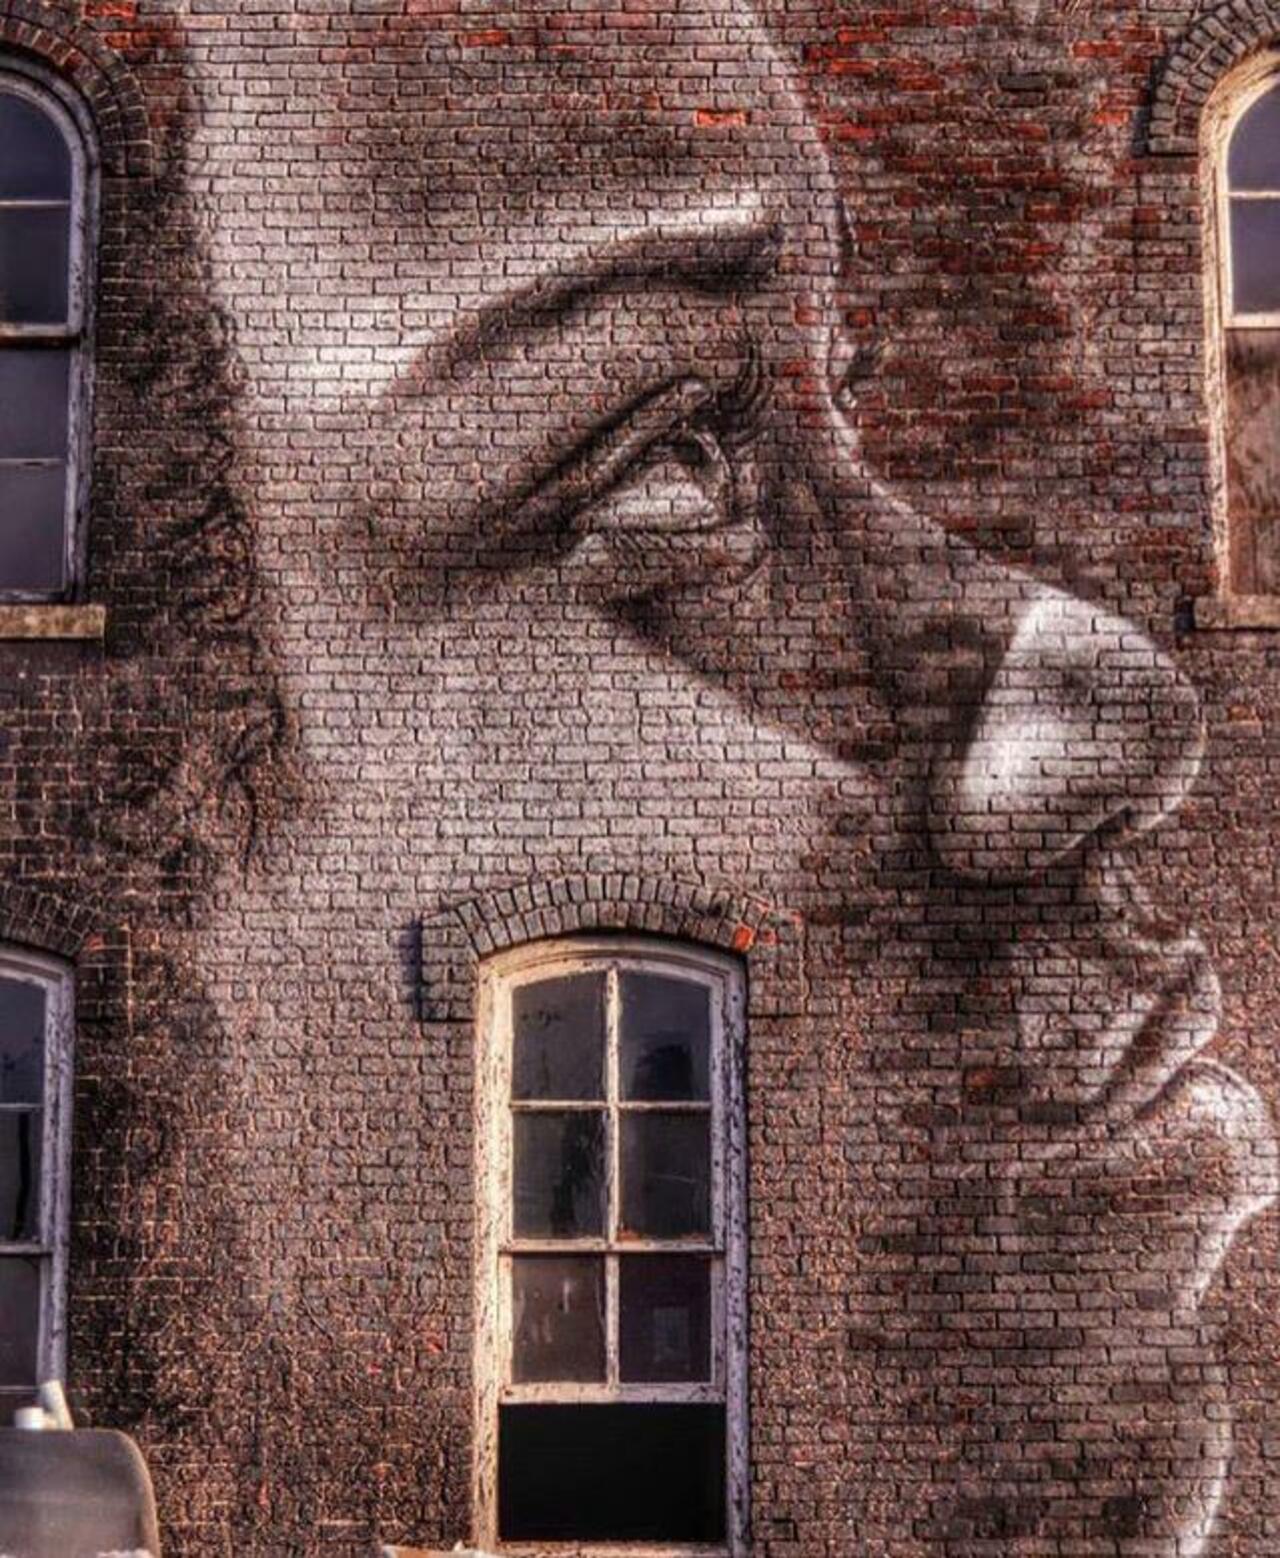 RT GoogleStreetArt: New Street Art by RONE

#art #graffiti #mural #streetart https://t.co/kWaErsoatg https://goo.gl/t4fpx2